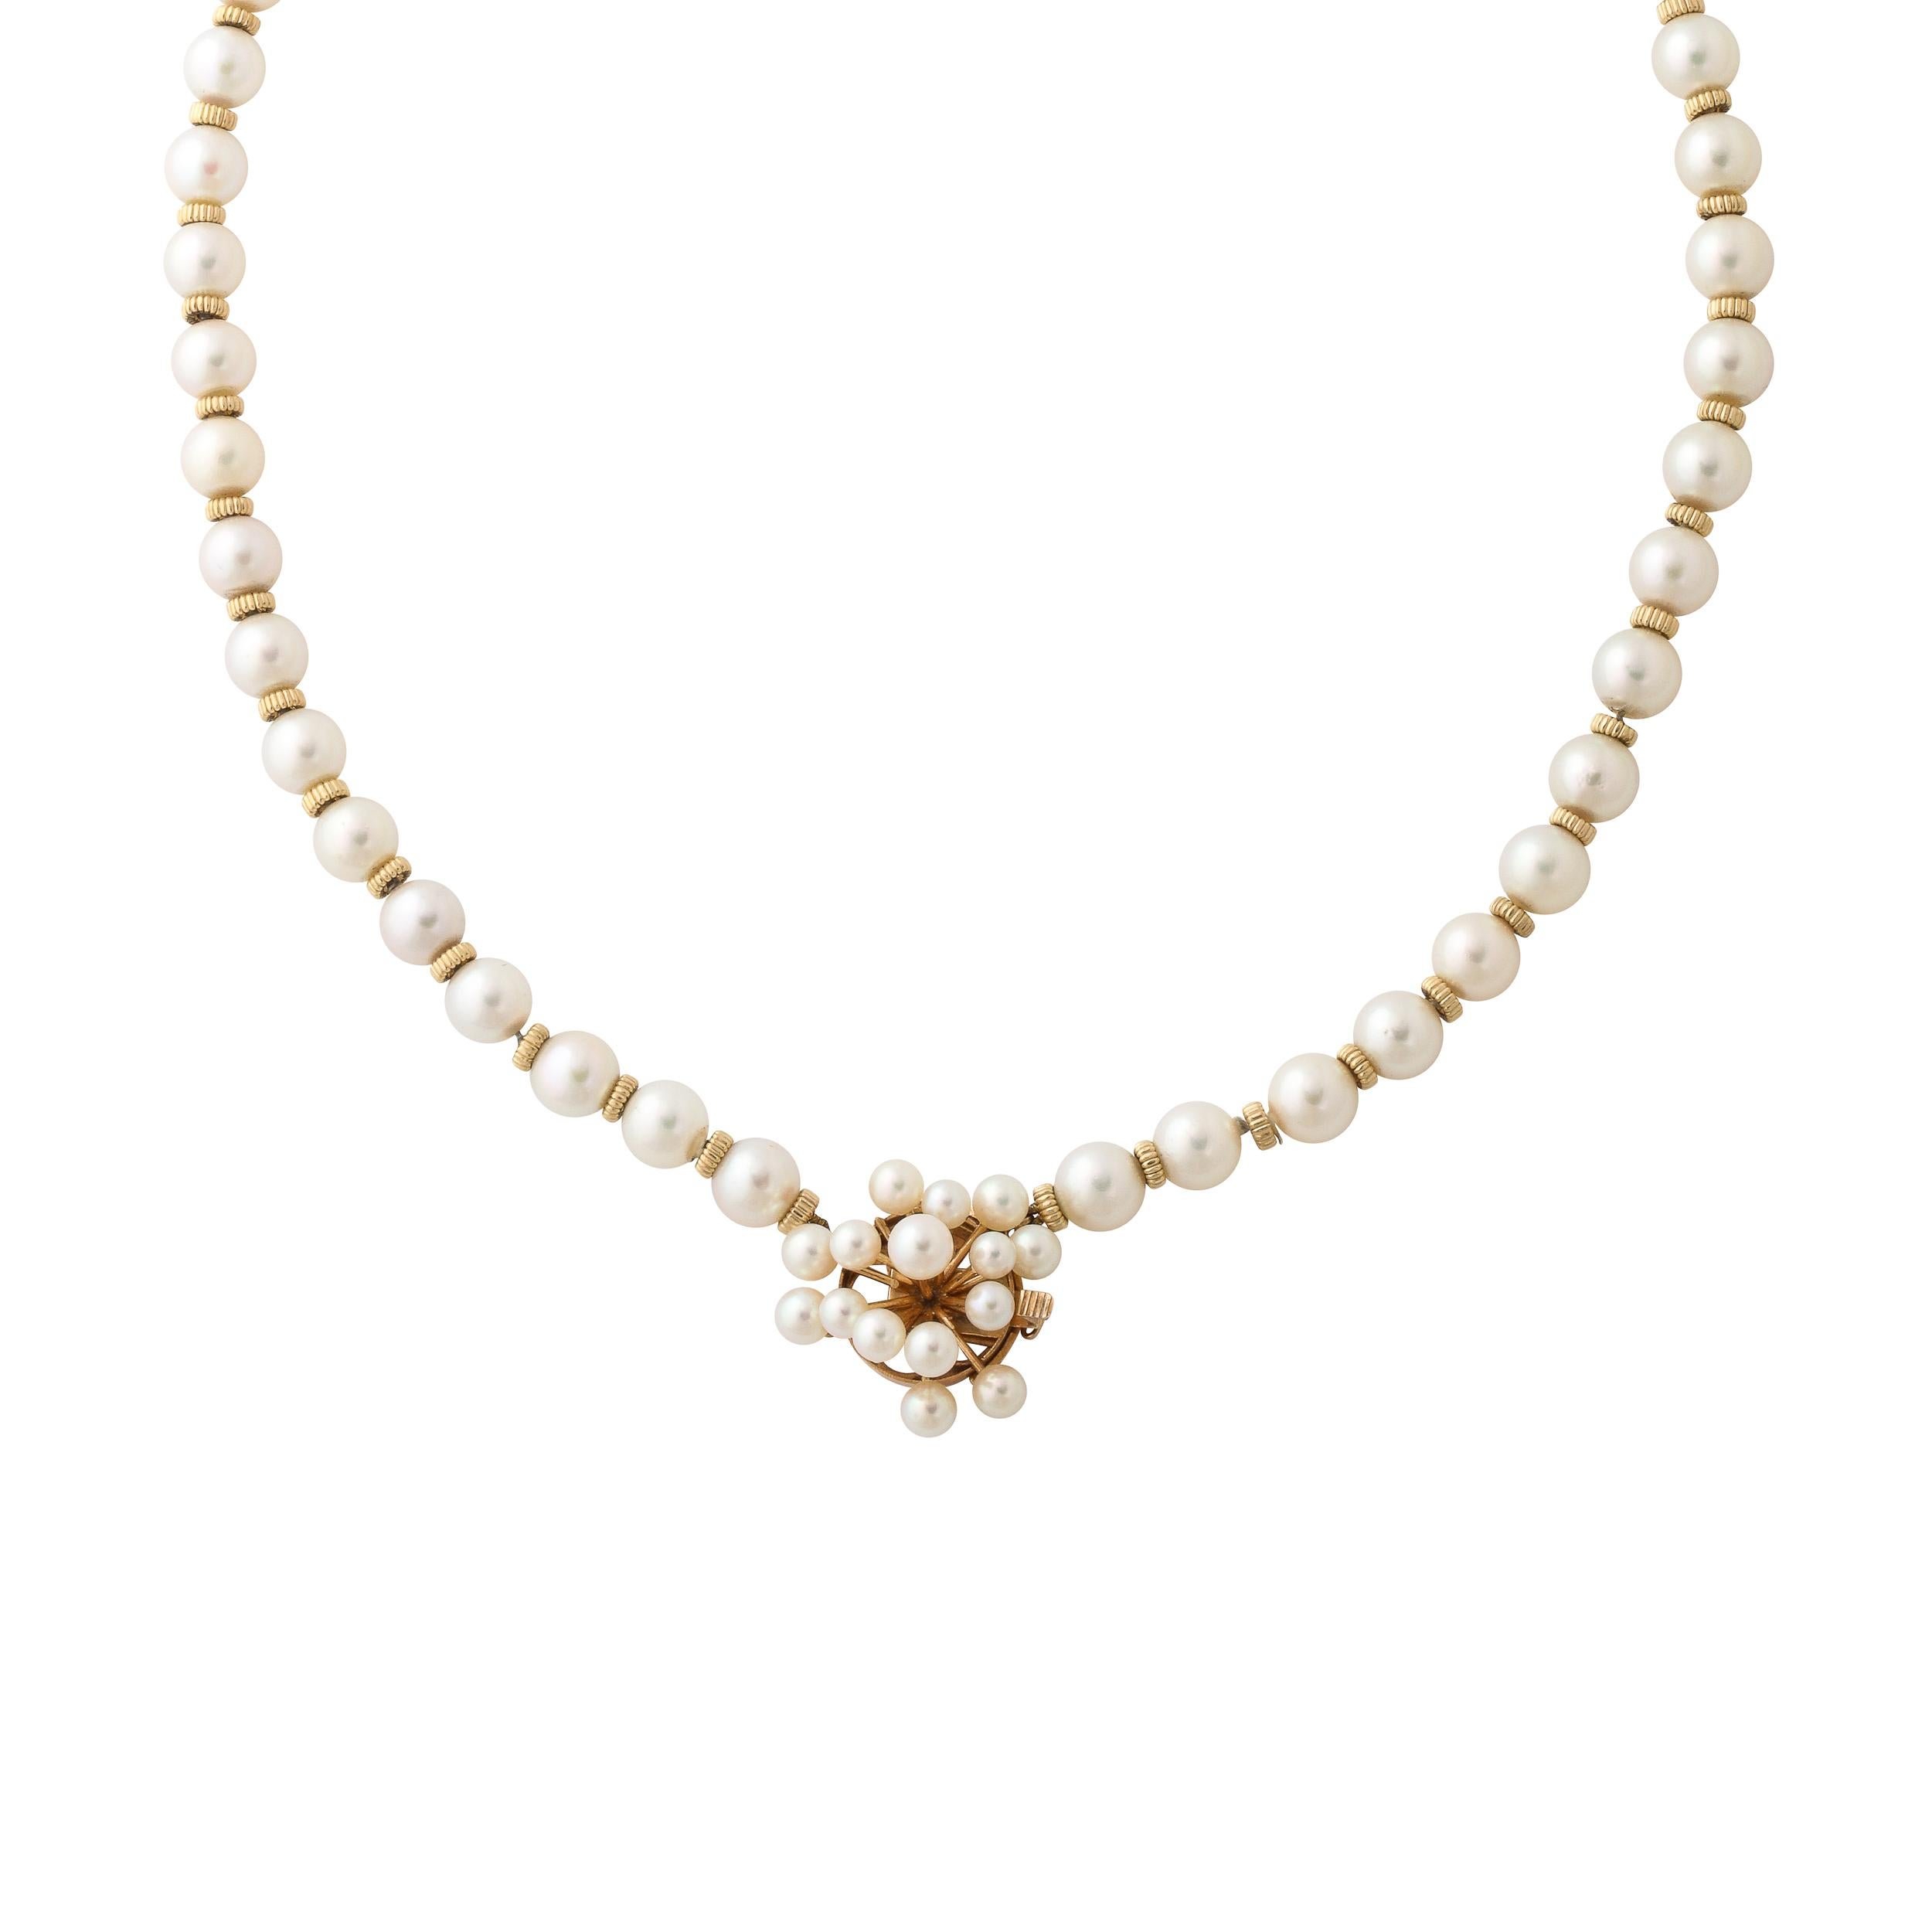 Ce collier en or 14k et perles du milieu du siècle est composé de perles d'environ 7 mm, d'une entretoise en or 14k nervurée entre chaque perle et d'un fermoir de forme Sputnik en or jaune 14k serti de 14 perles. Le fermoir est marqué 14k et est